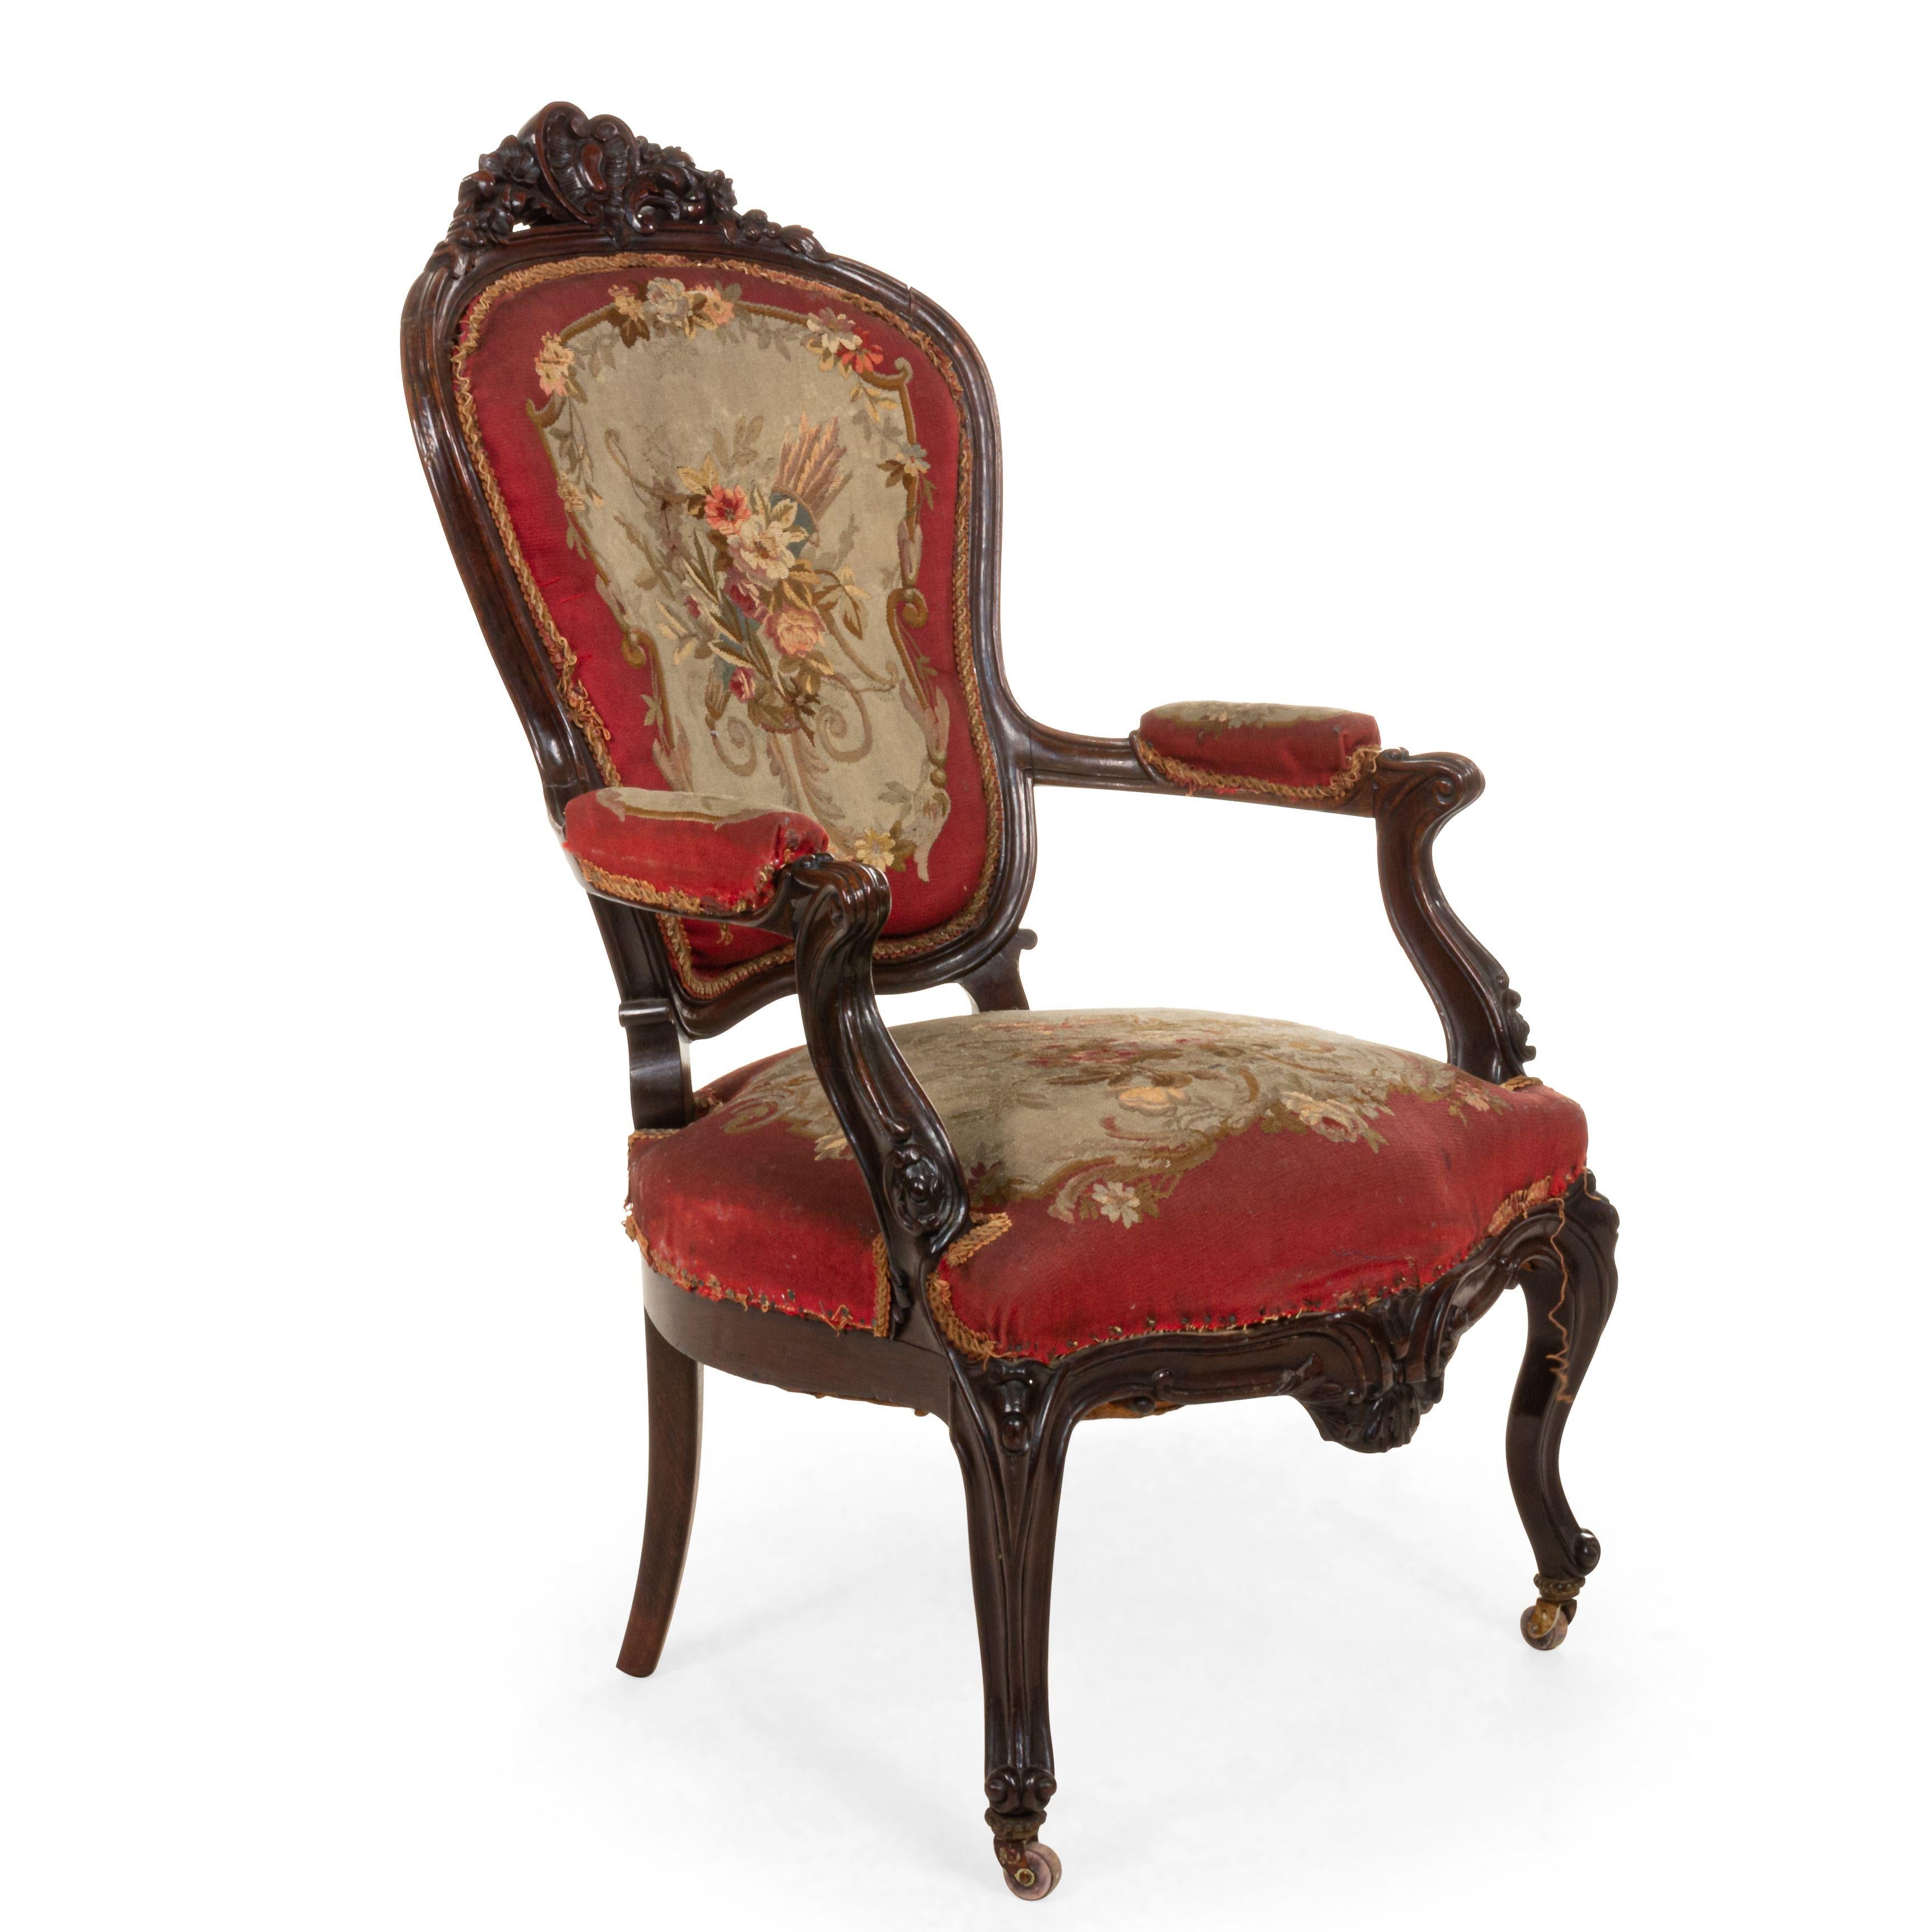 Paire de fauteuils français victoriens en bois de rose, avec une crête de dossier sculptée et une tapisserie Aubusson à fleurs rouges. (similaire à #038110C).